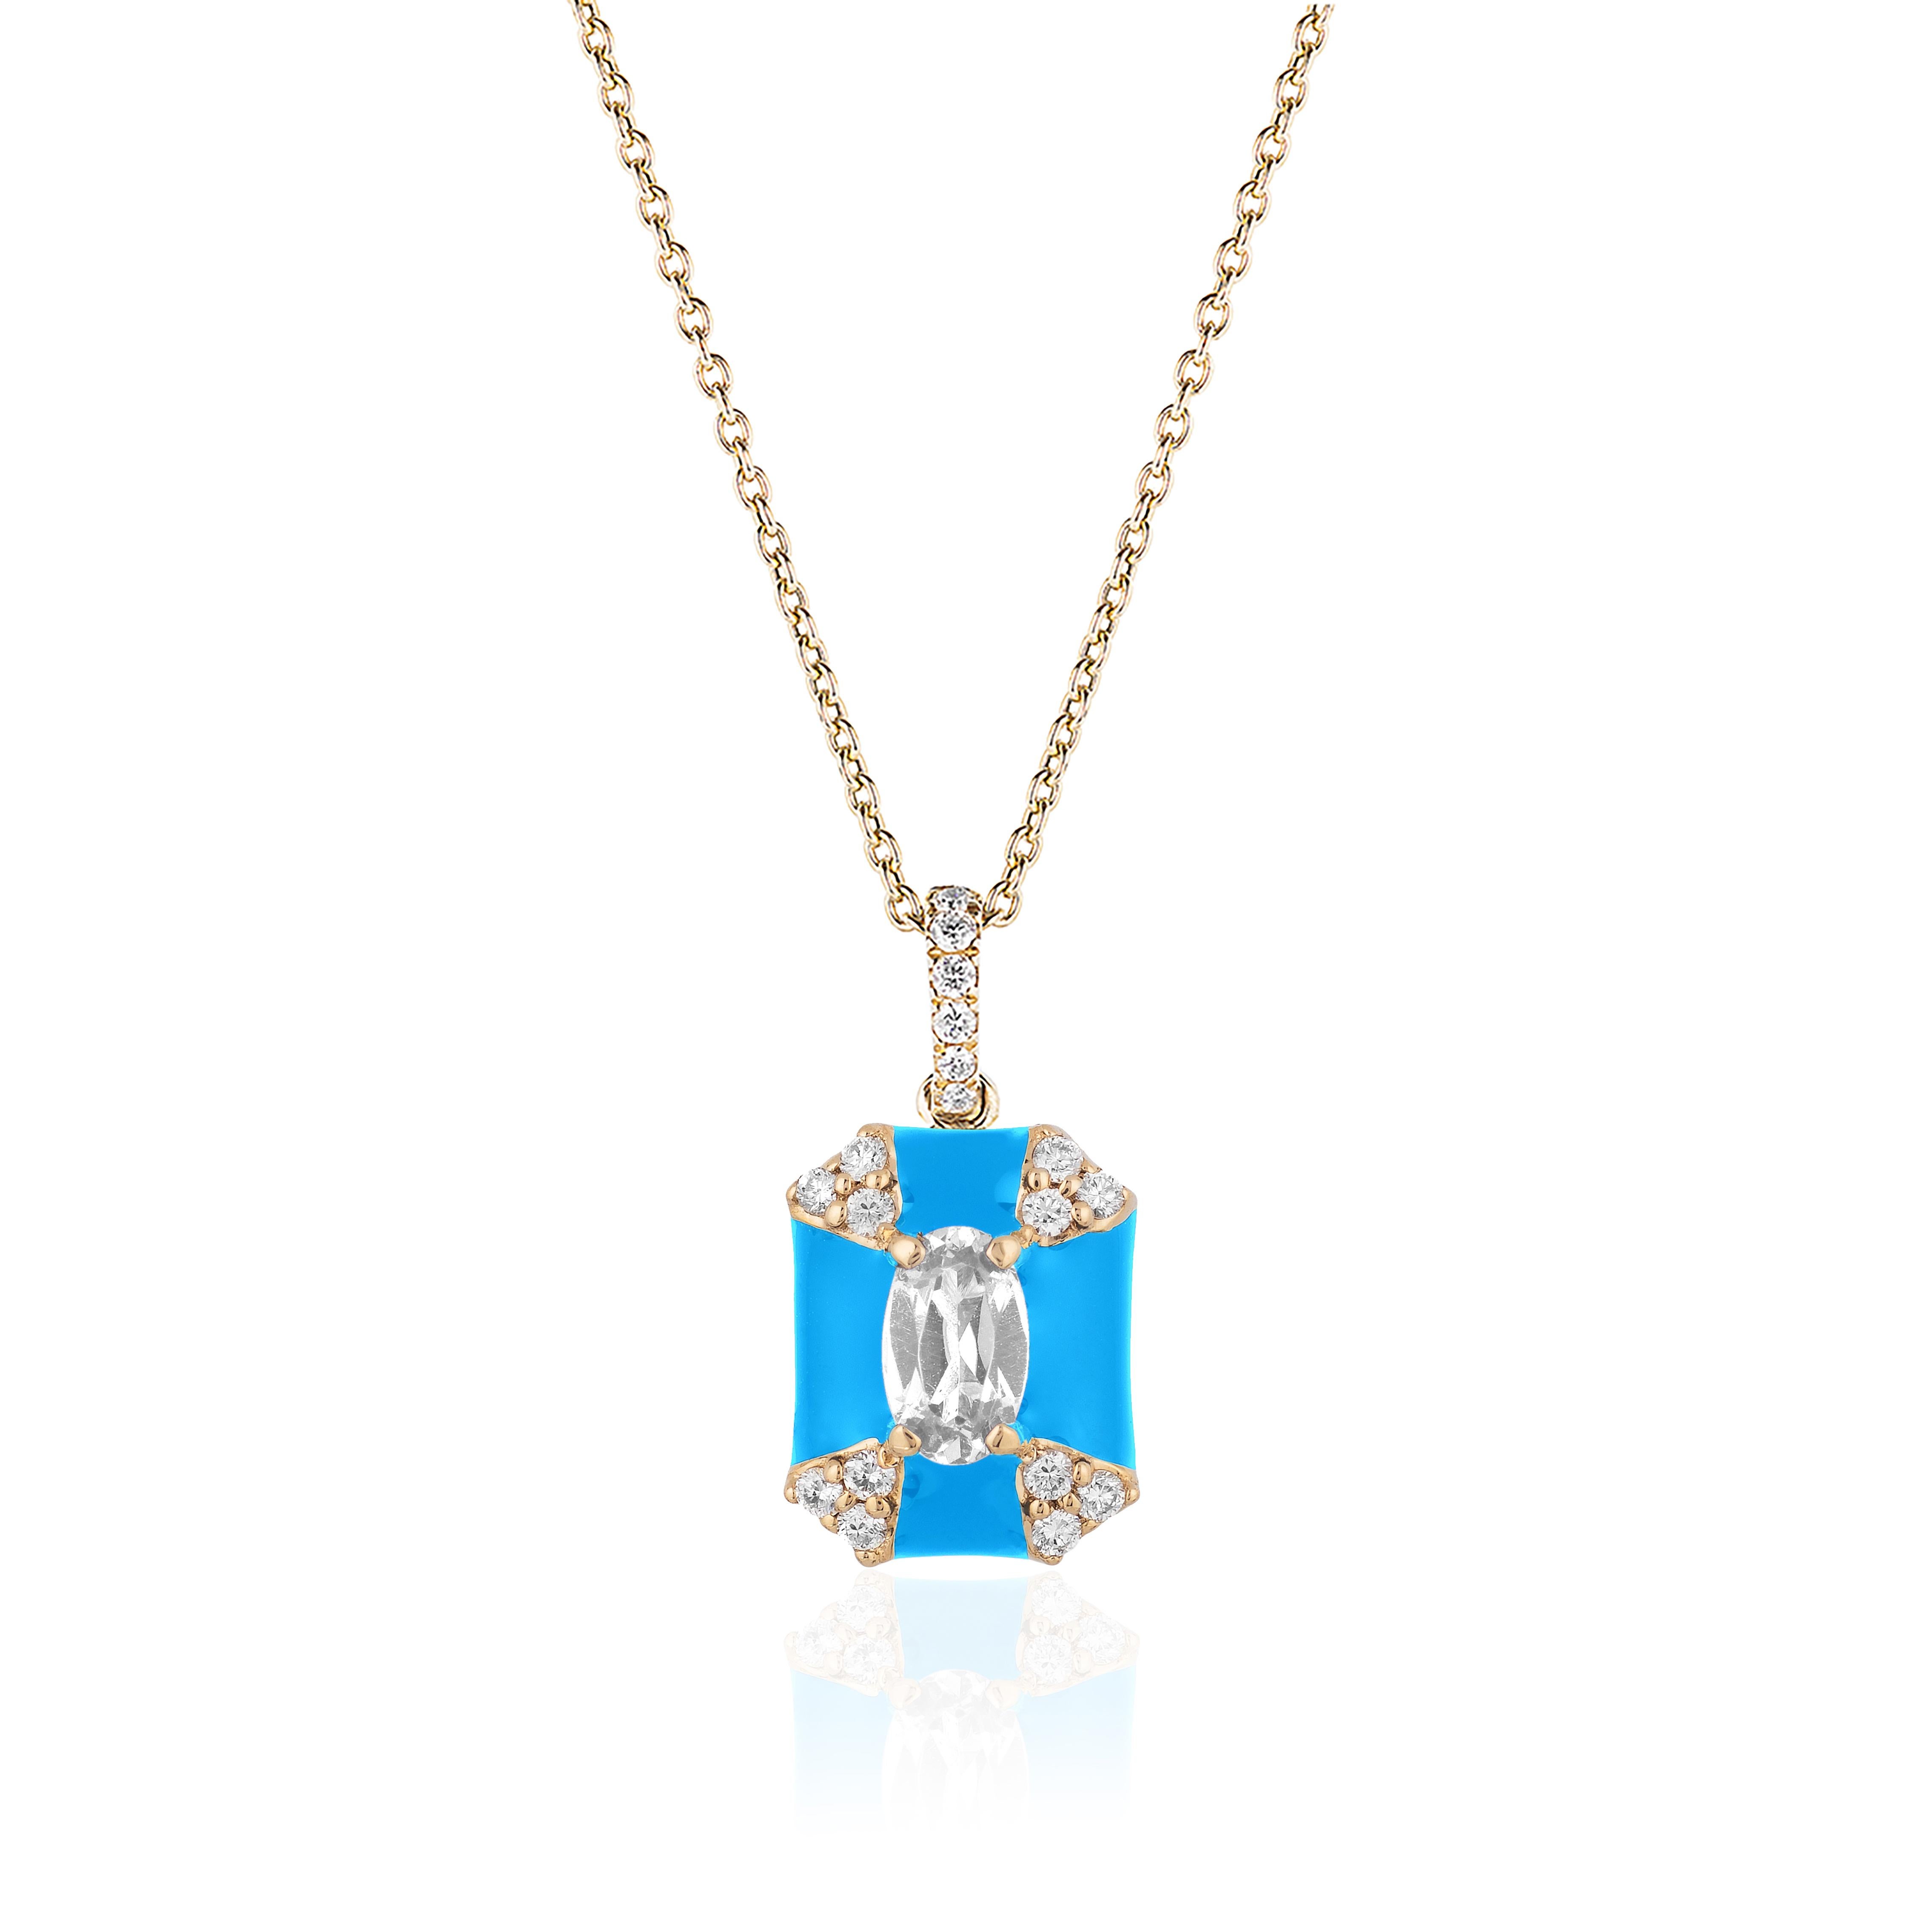 Contemporain Pendentif Goshwara octogonal en émail turquoise et diamants